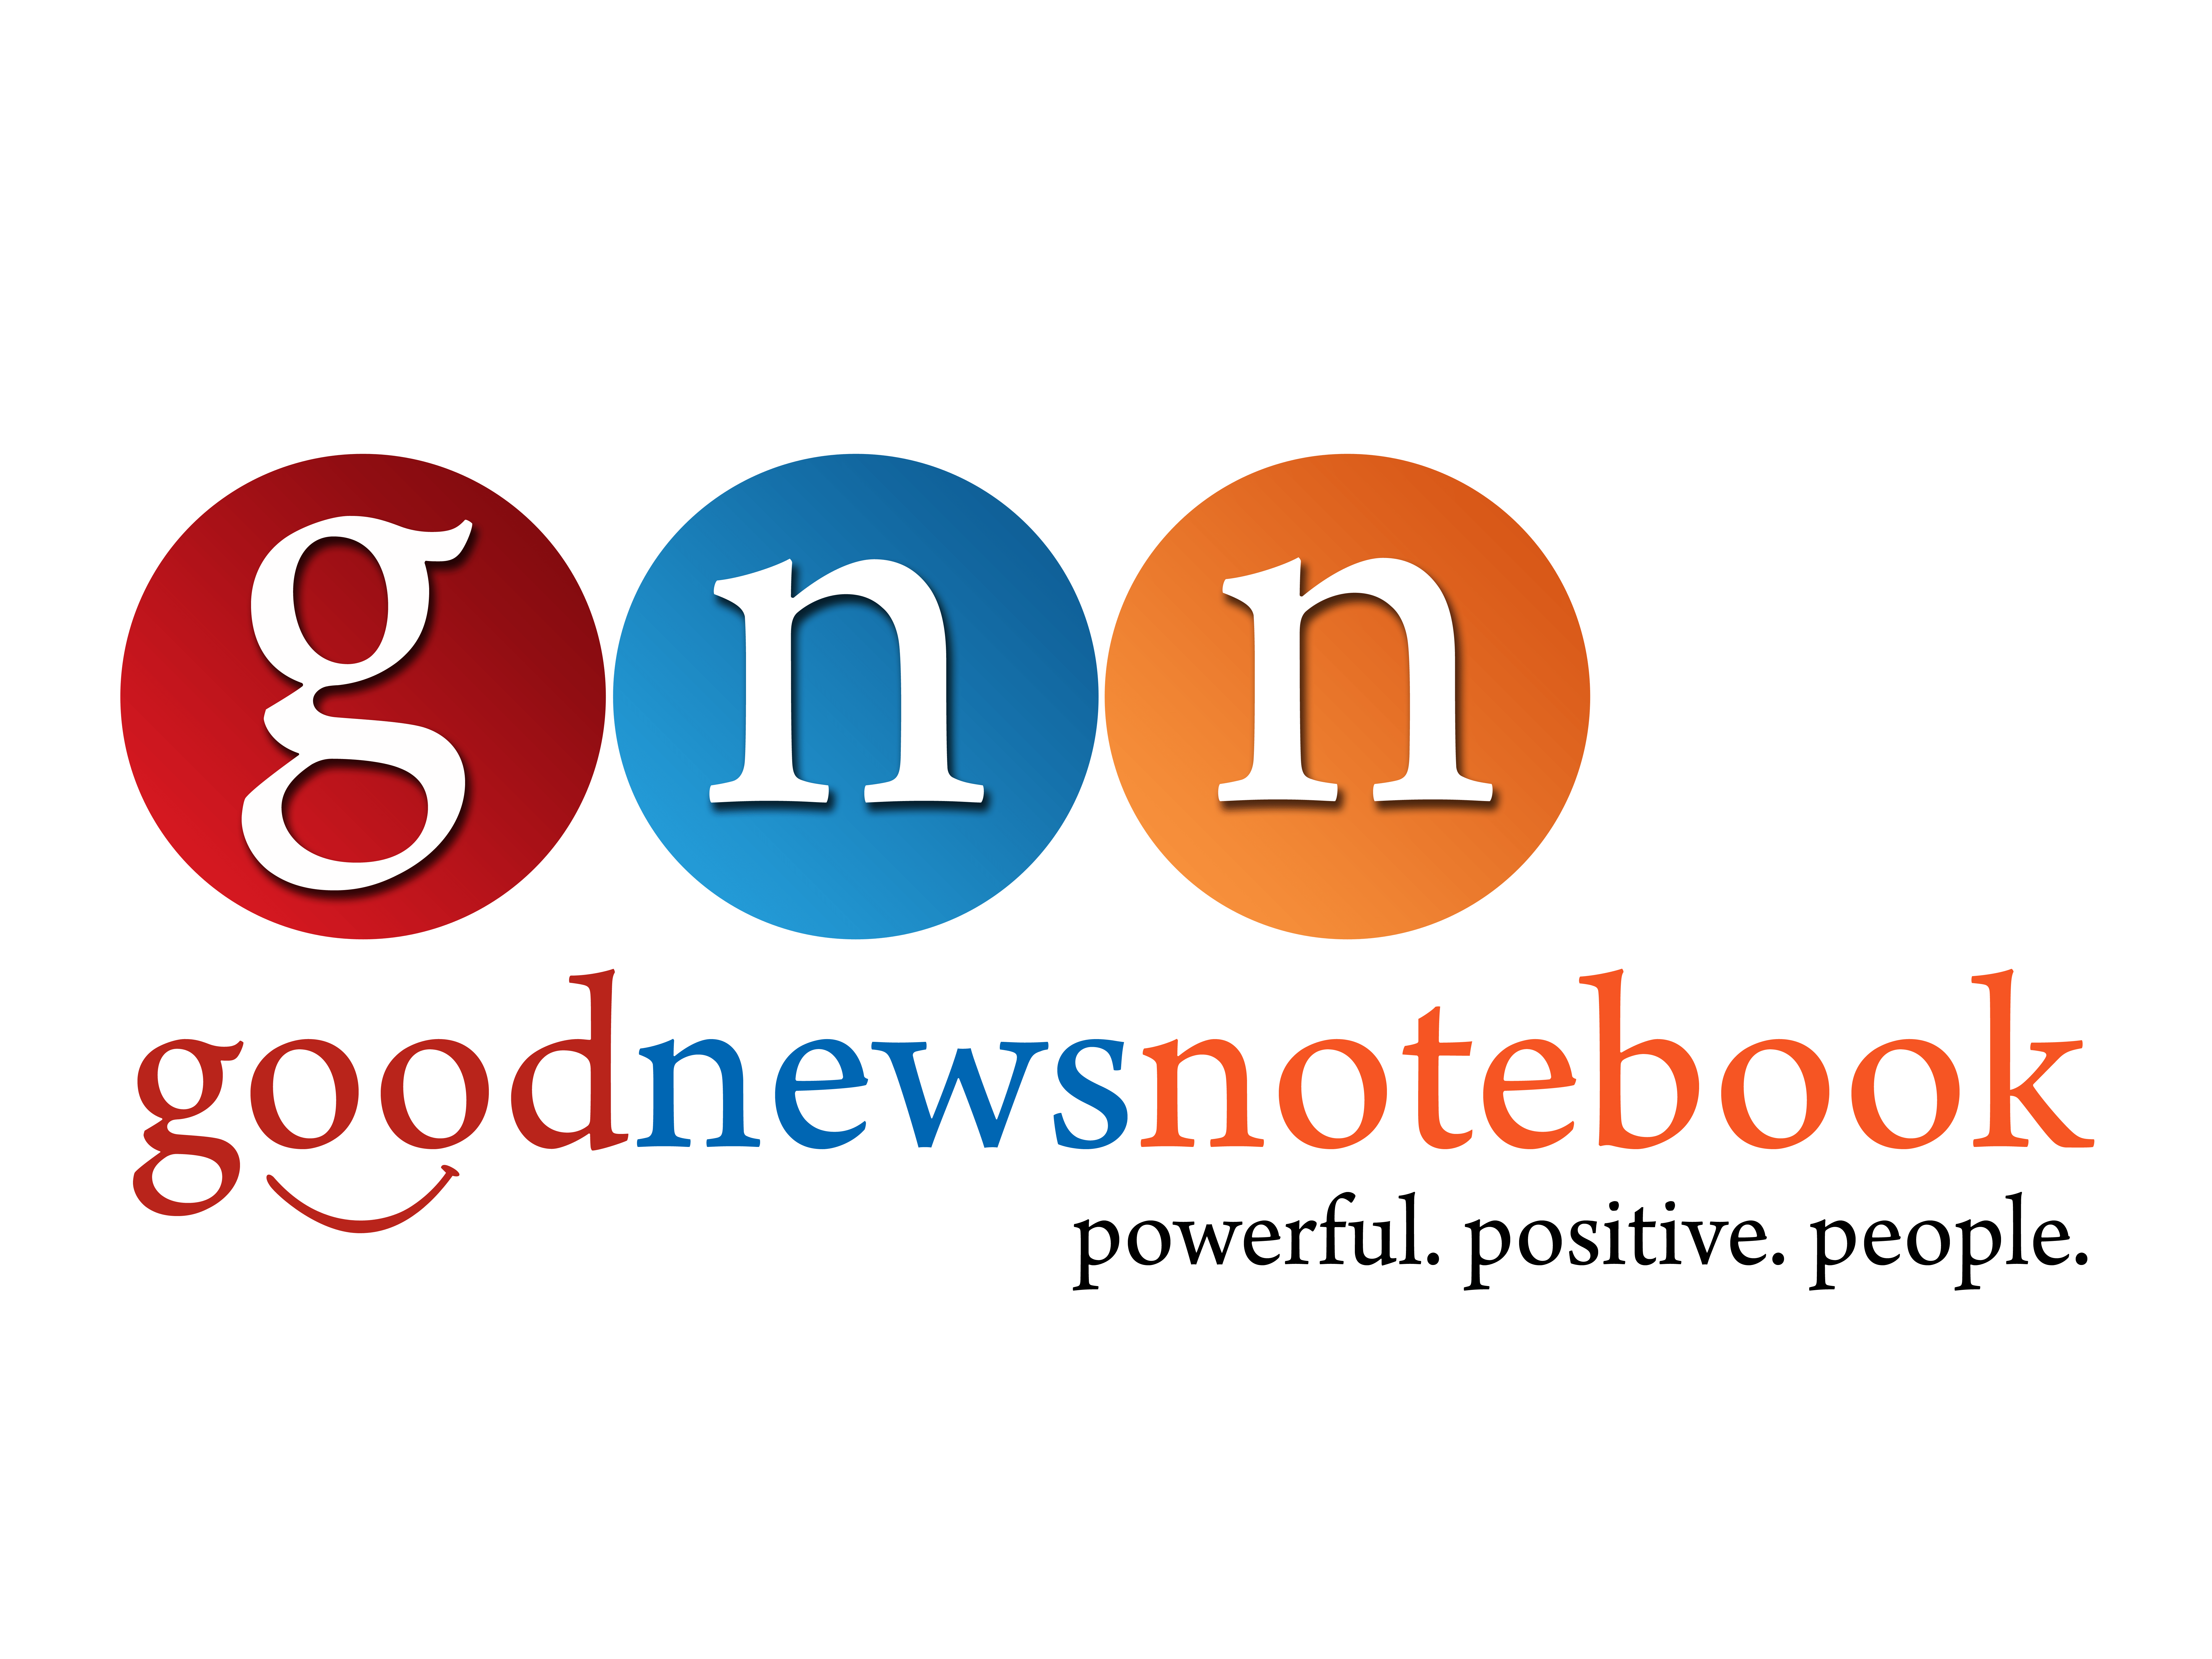 good news notebook